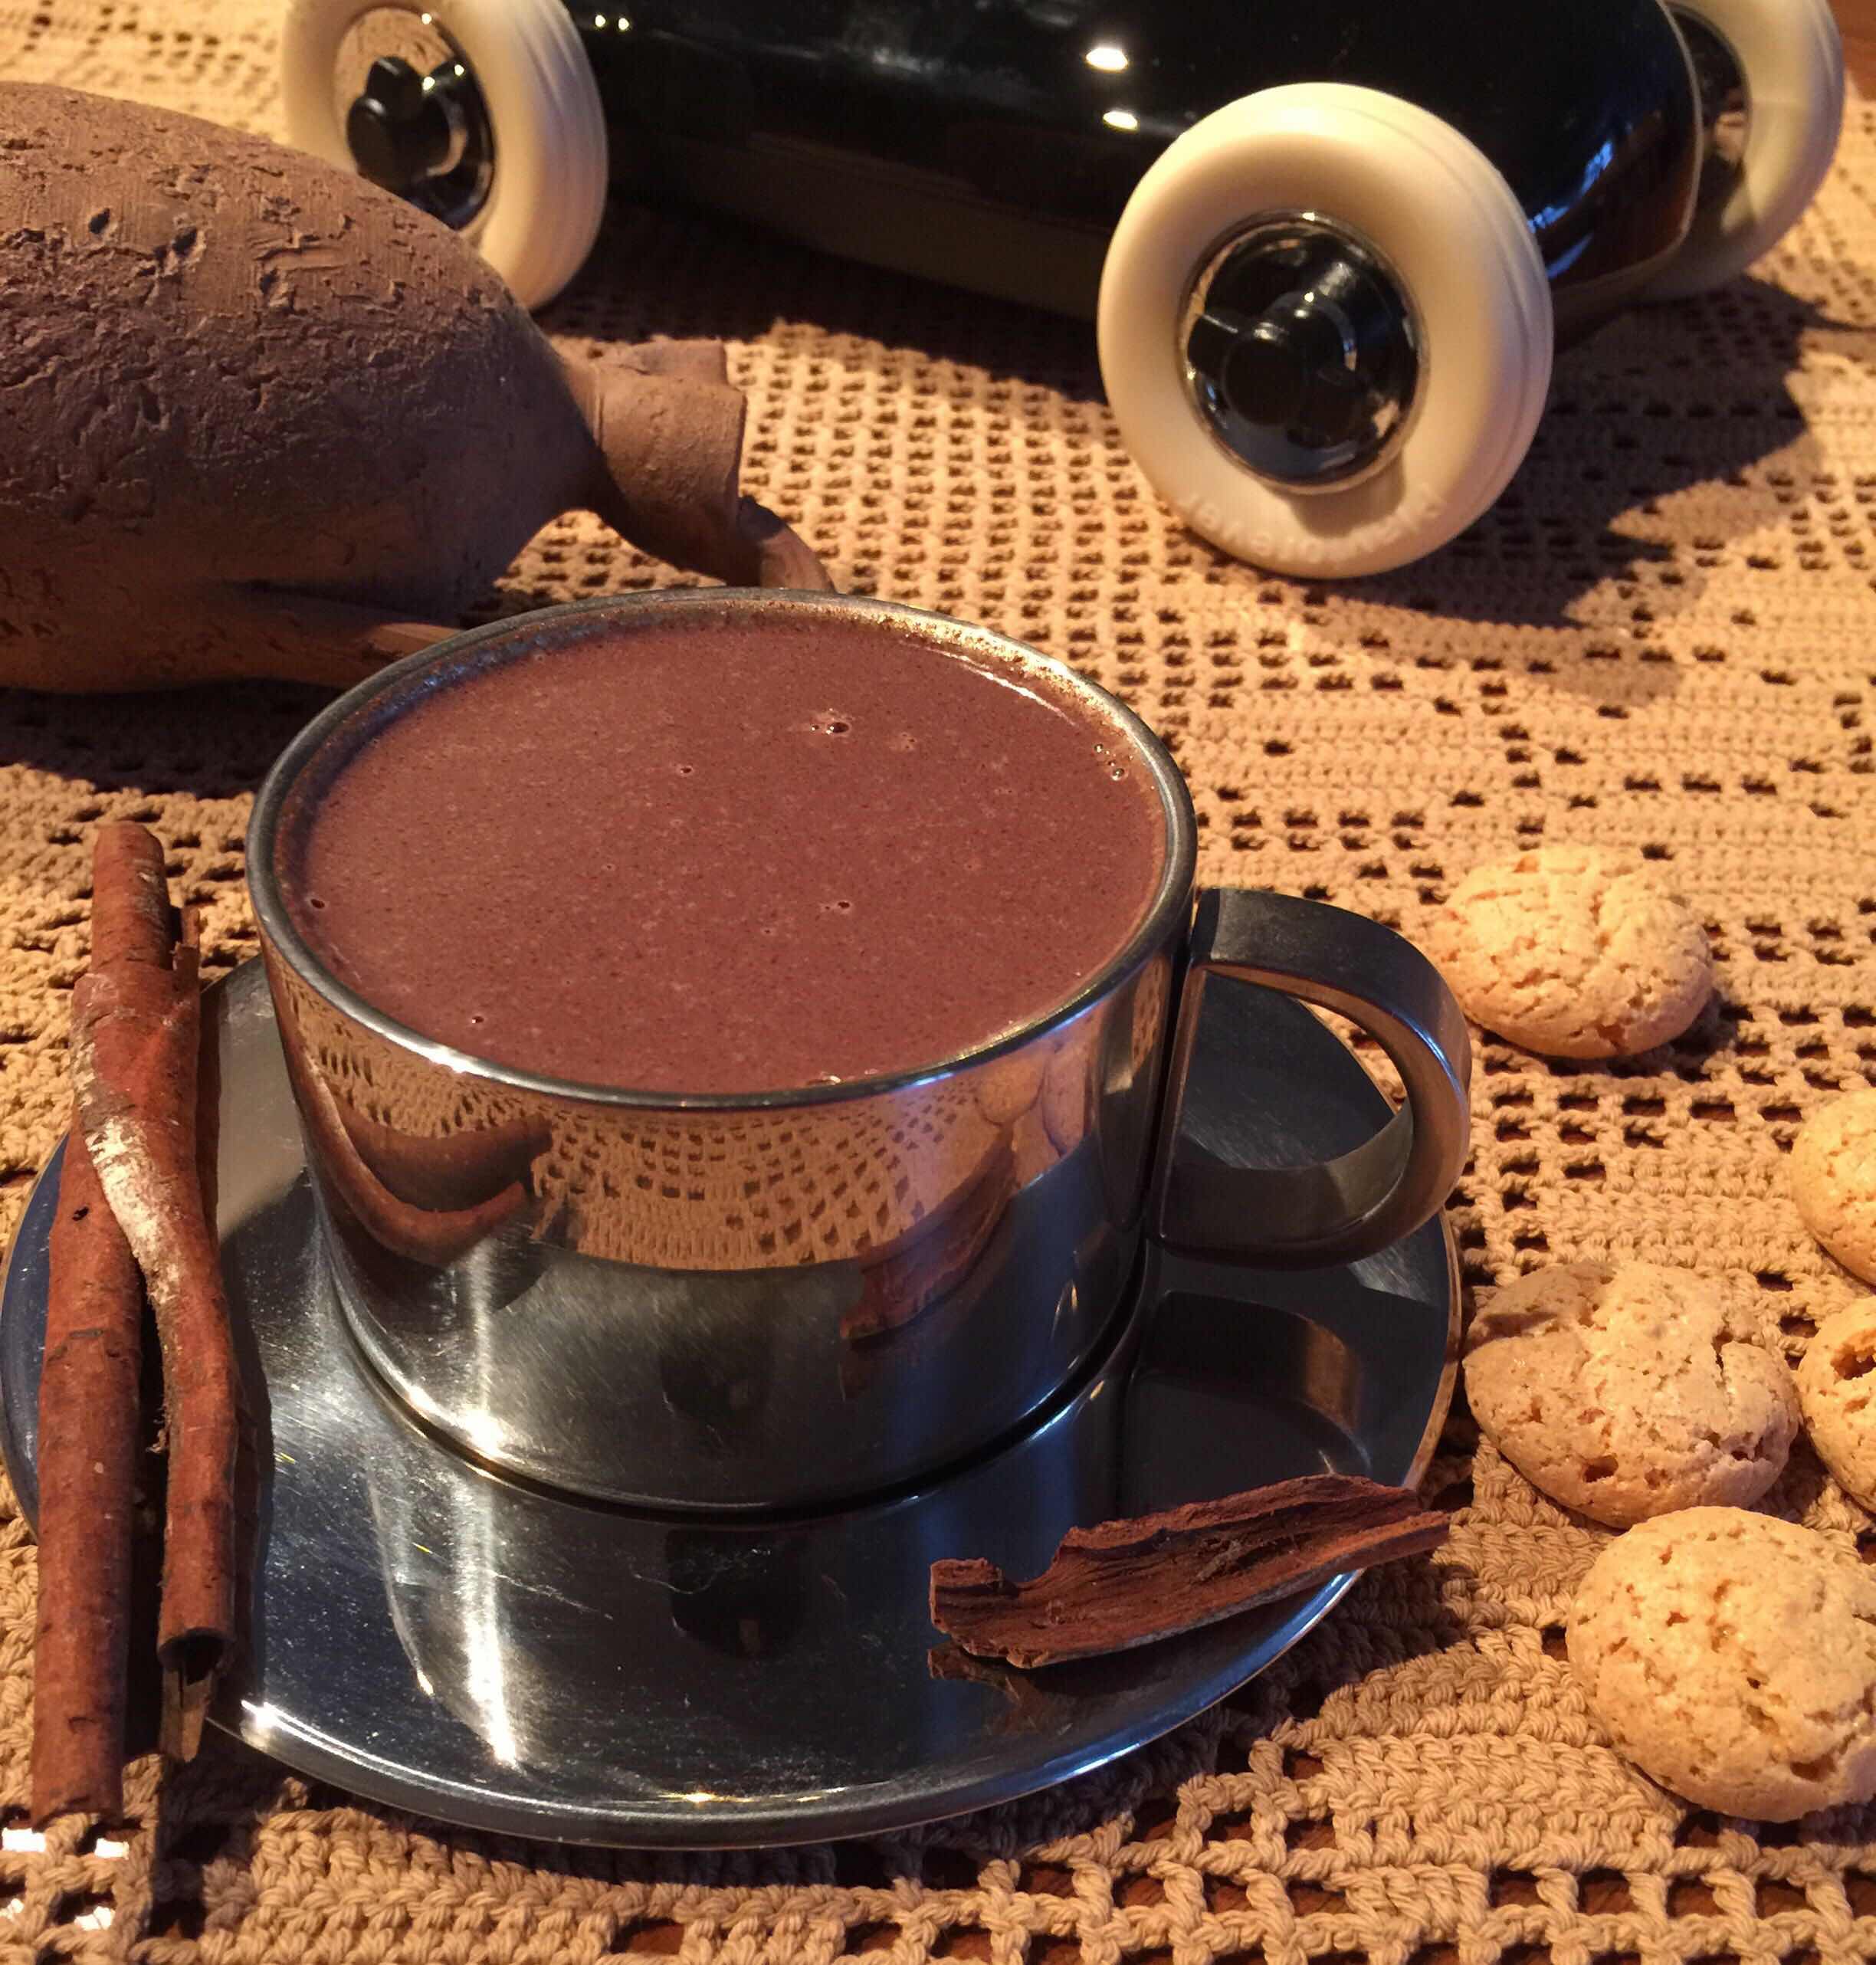 Как сварить какао из порошка «золотой ярлык» на молоке правильно и вкусно в домашних условиях